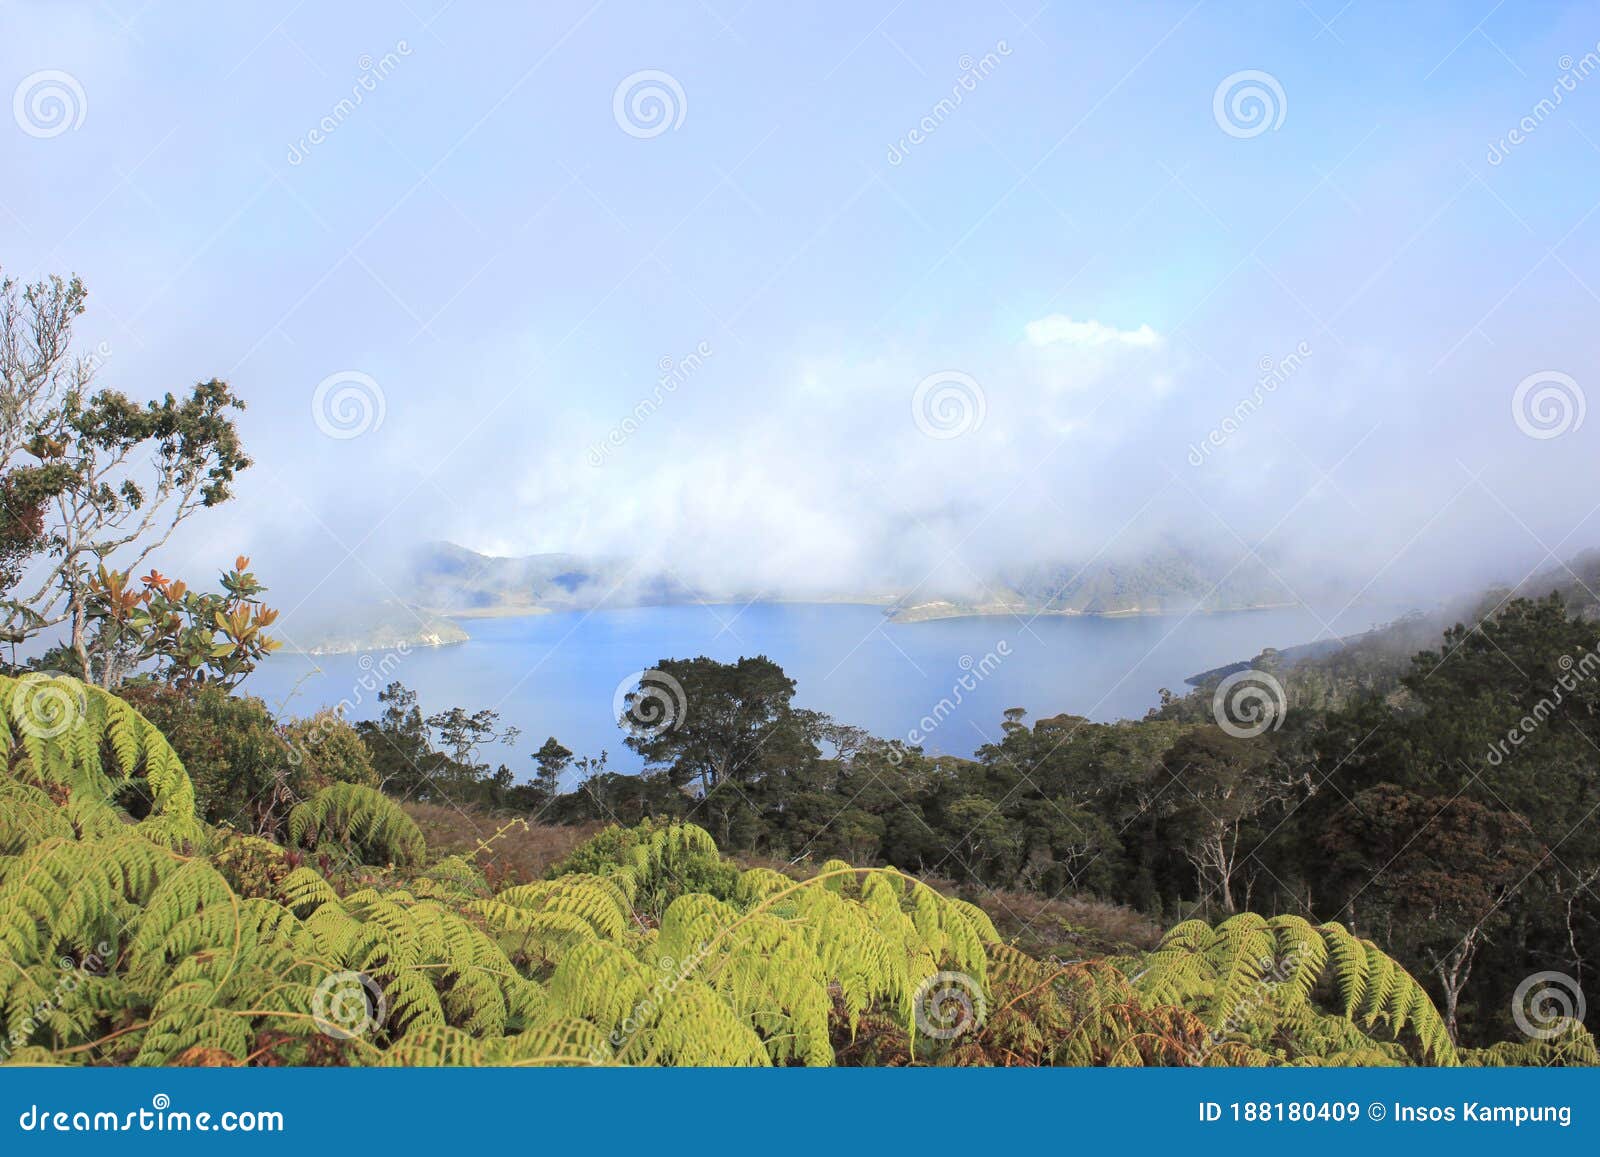 anggi gida lake, arfak mountains, papua